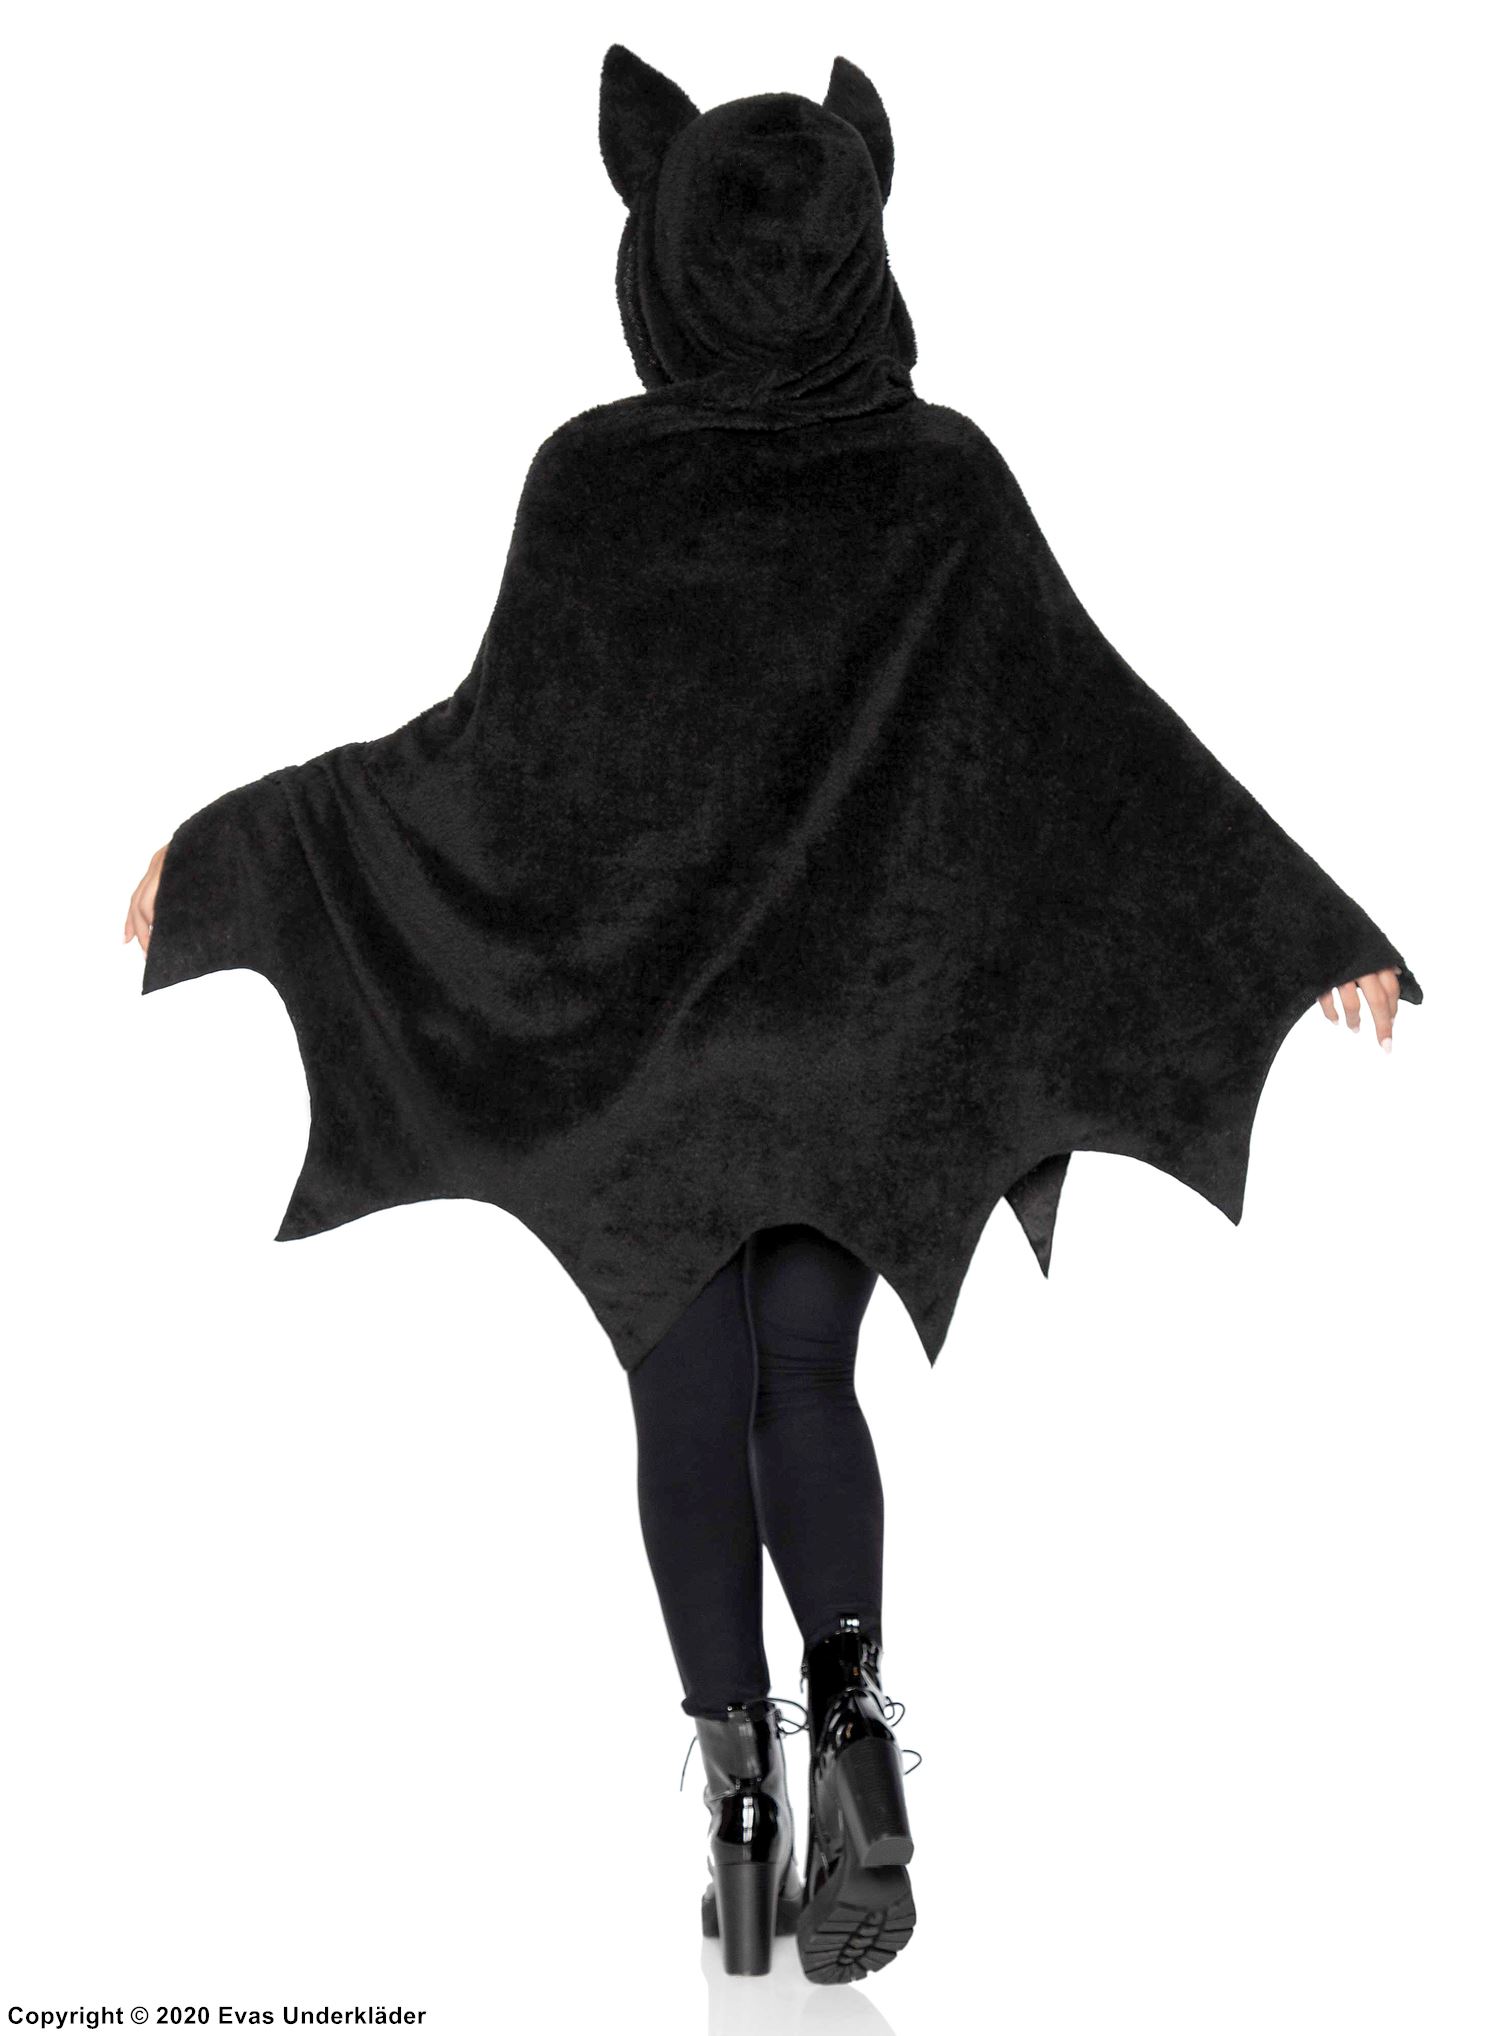 Female bat, costume poncho, hood, ears